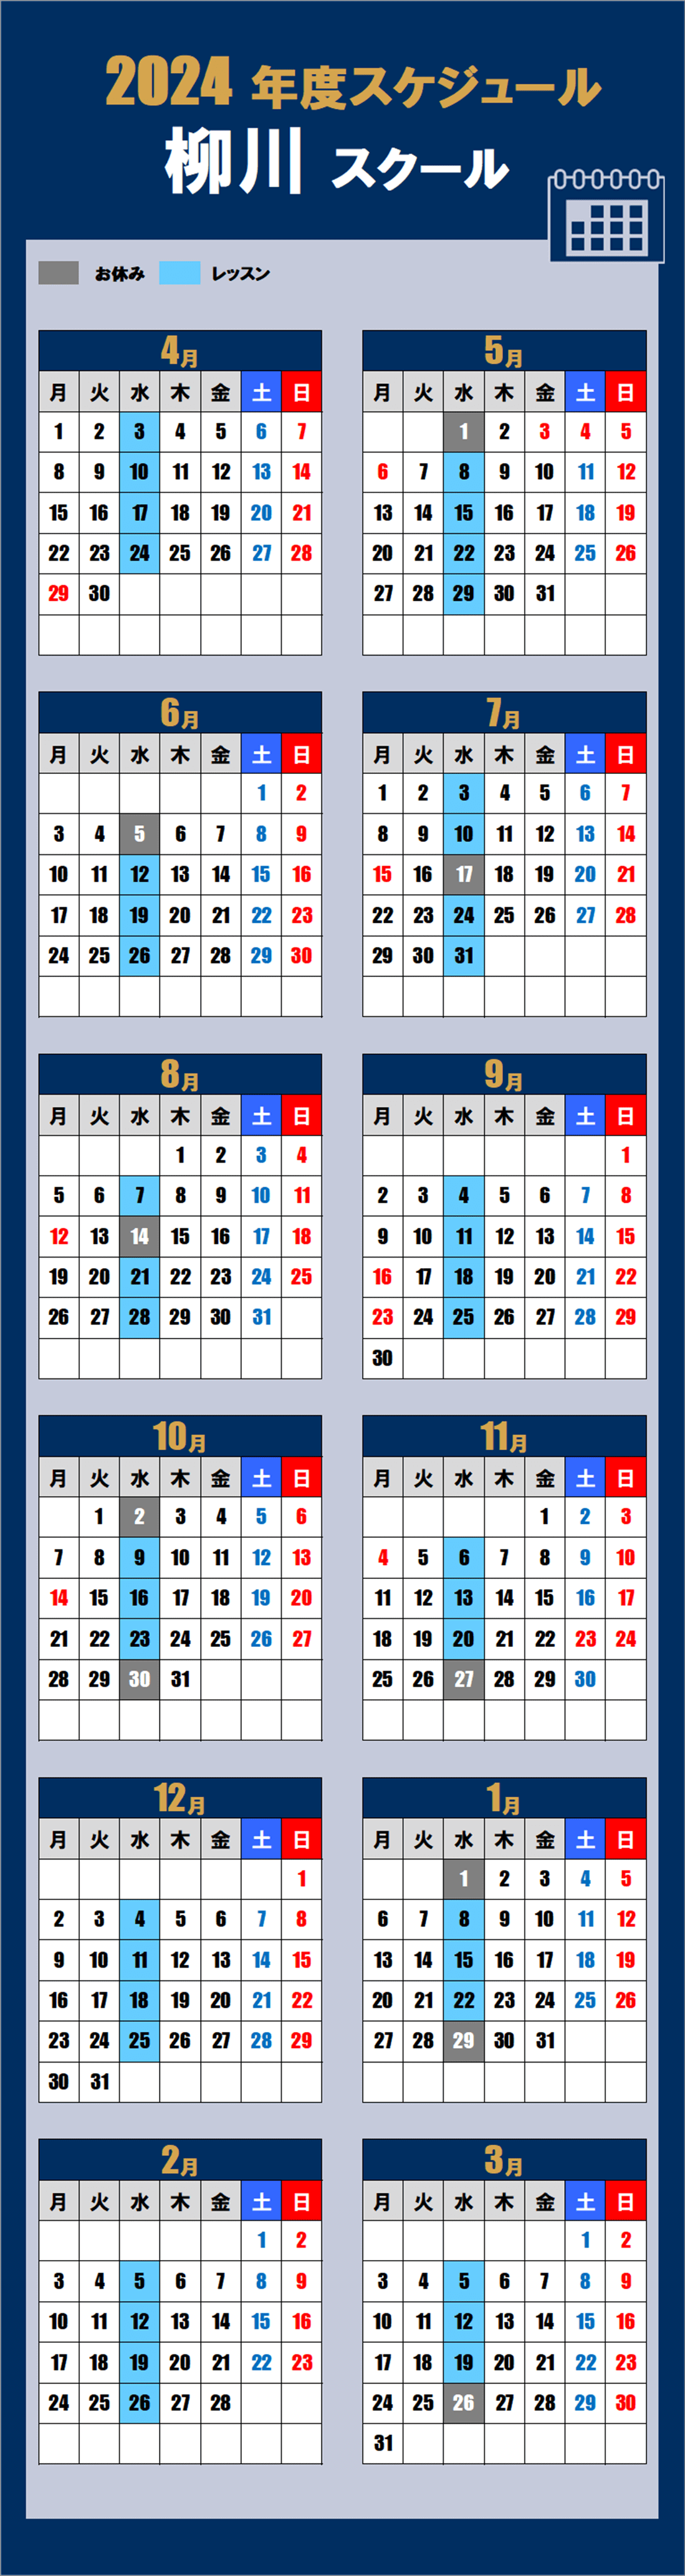 2024柳川スクールカレンダー